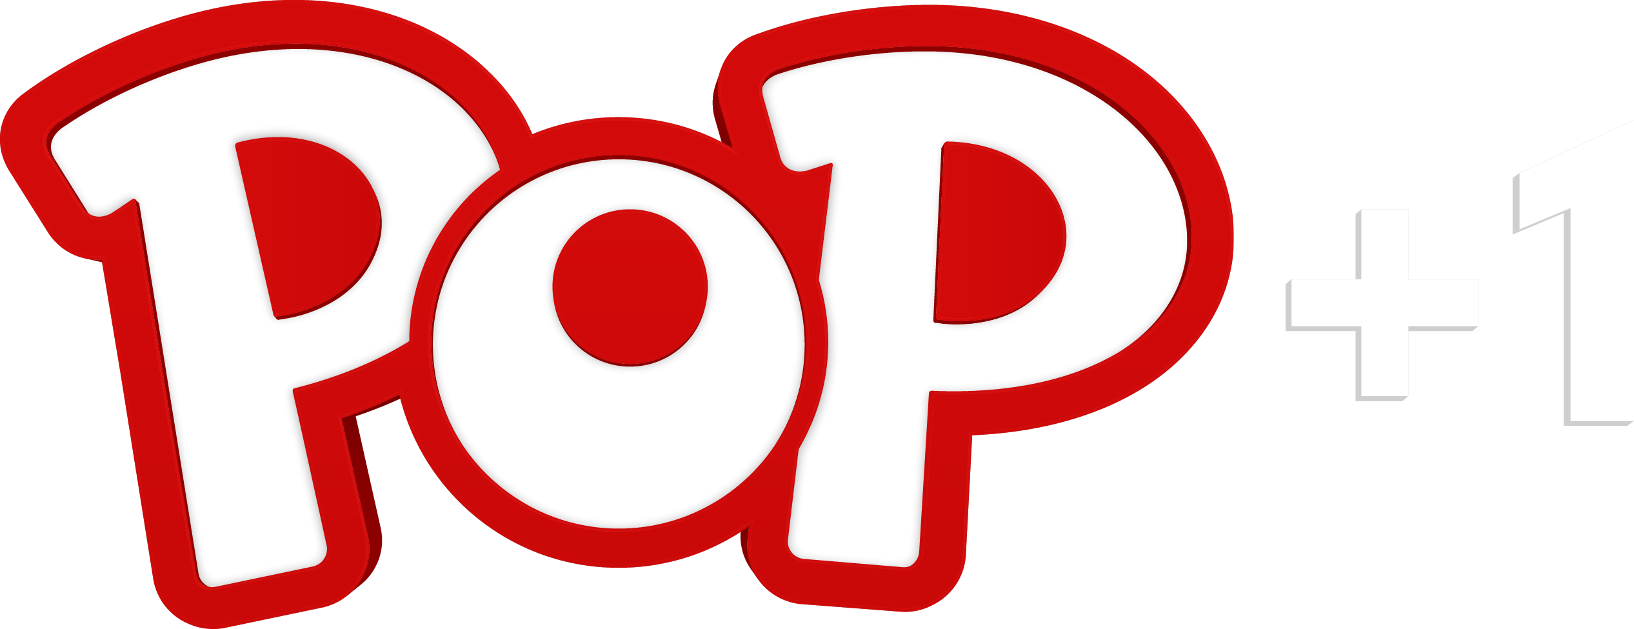 Pop Plus 1